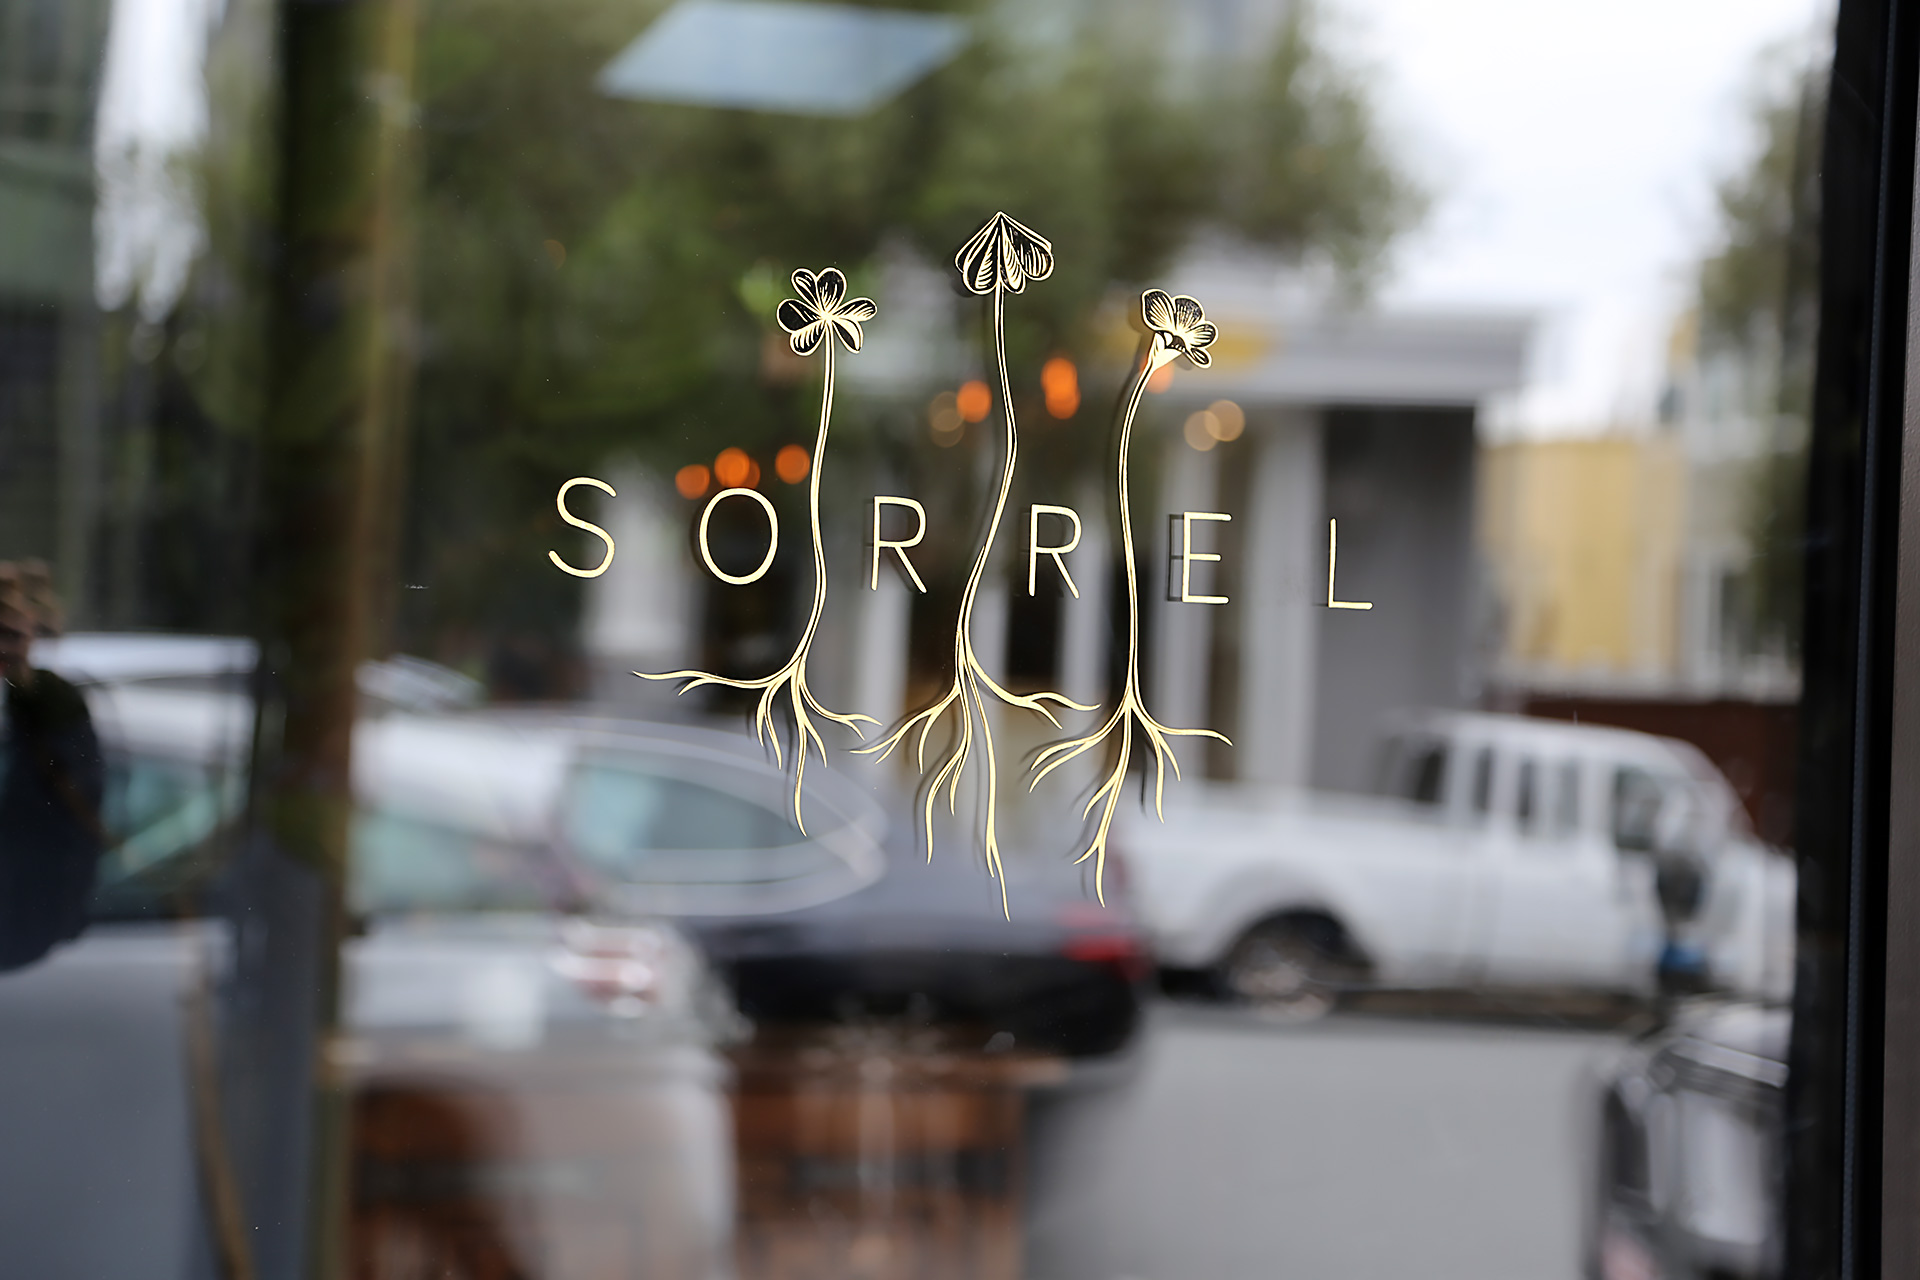 Sorrel logo on front door